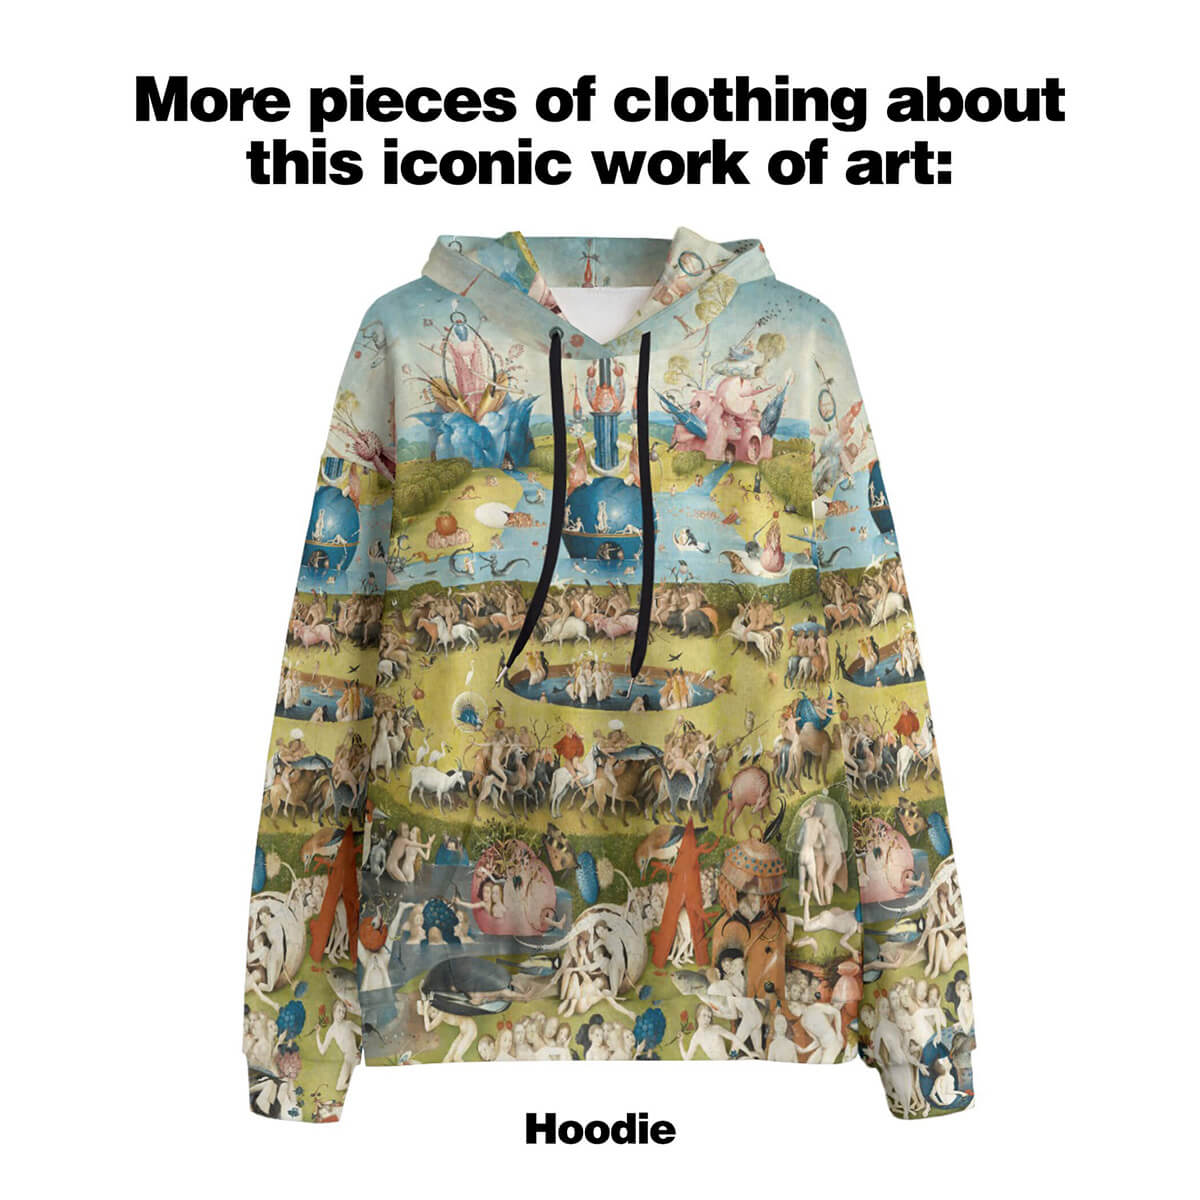 A Földi örömök kertje – Hieronymus Bosch póló